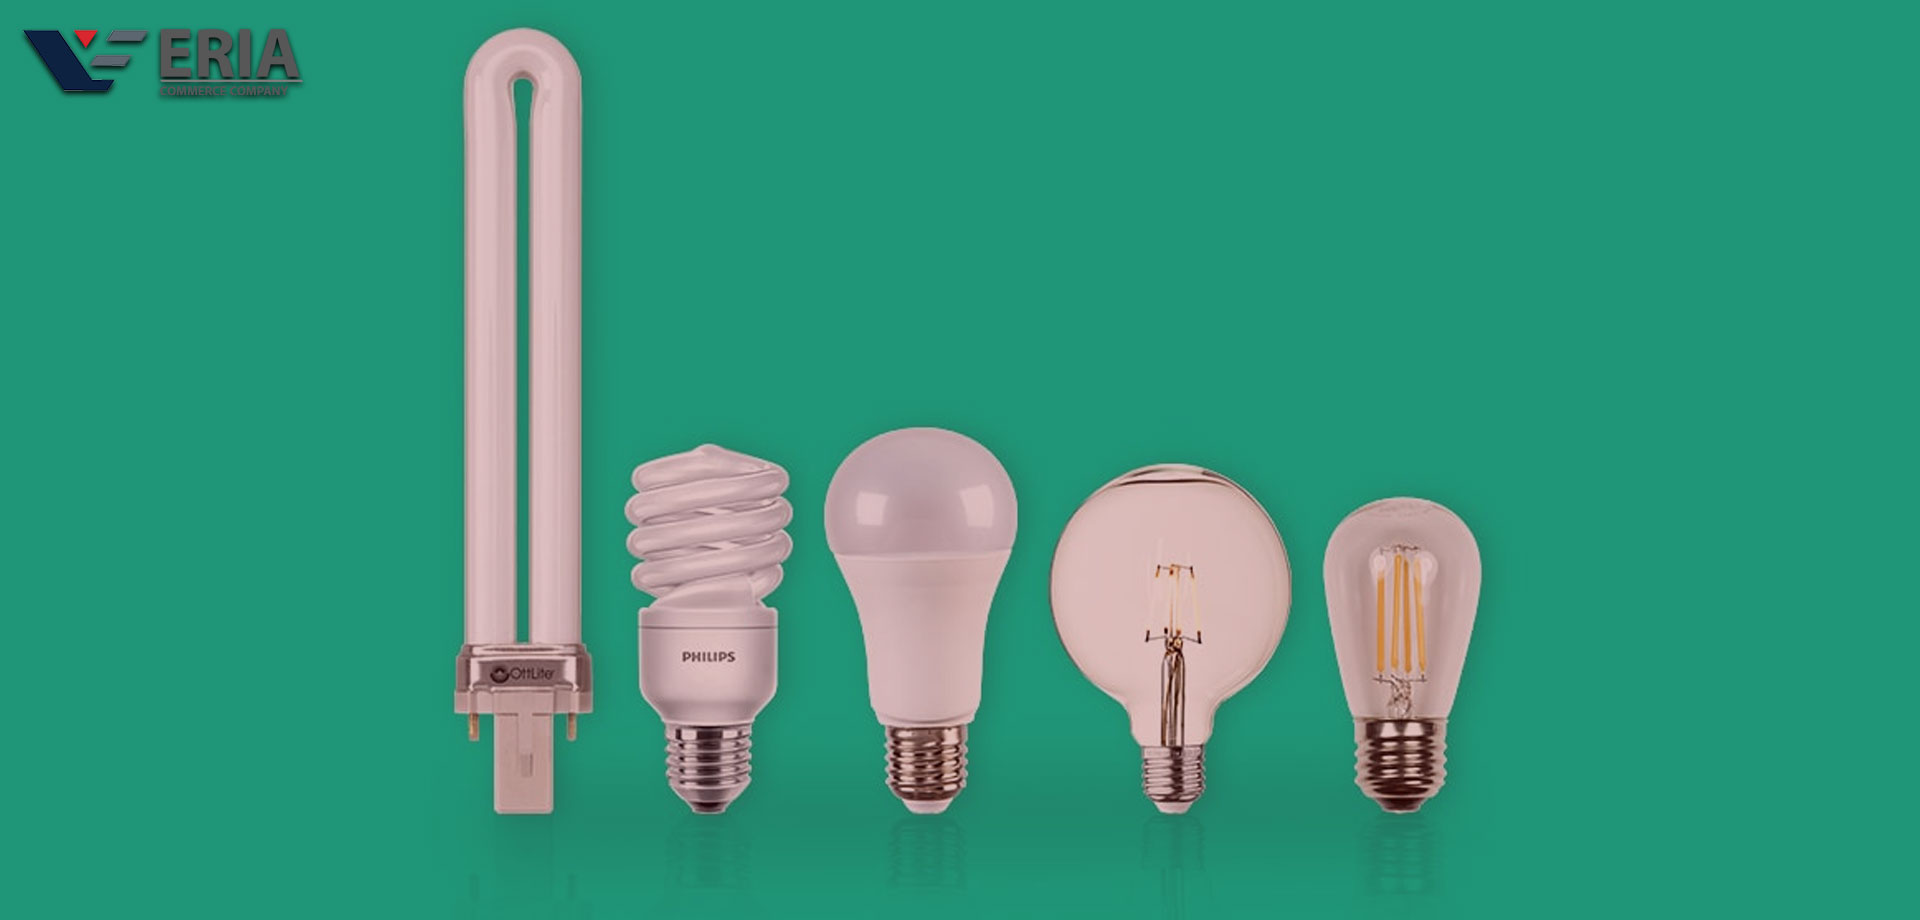 خرید لامپ , فروش لامپ , قیمت لامپ , صادرات لامپ , واردات لامپ , تامین لامپ , تامین مستقیم لامپ , تجارت لامپ , بازرگانی لامپ , بزرگترین تامین کننده لامپ , شرکت بازرگانی لامپ , نرخ لامپ